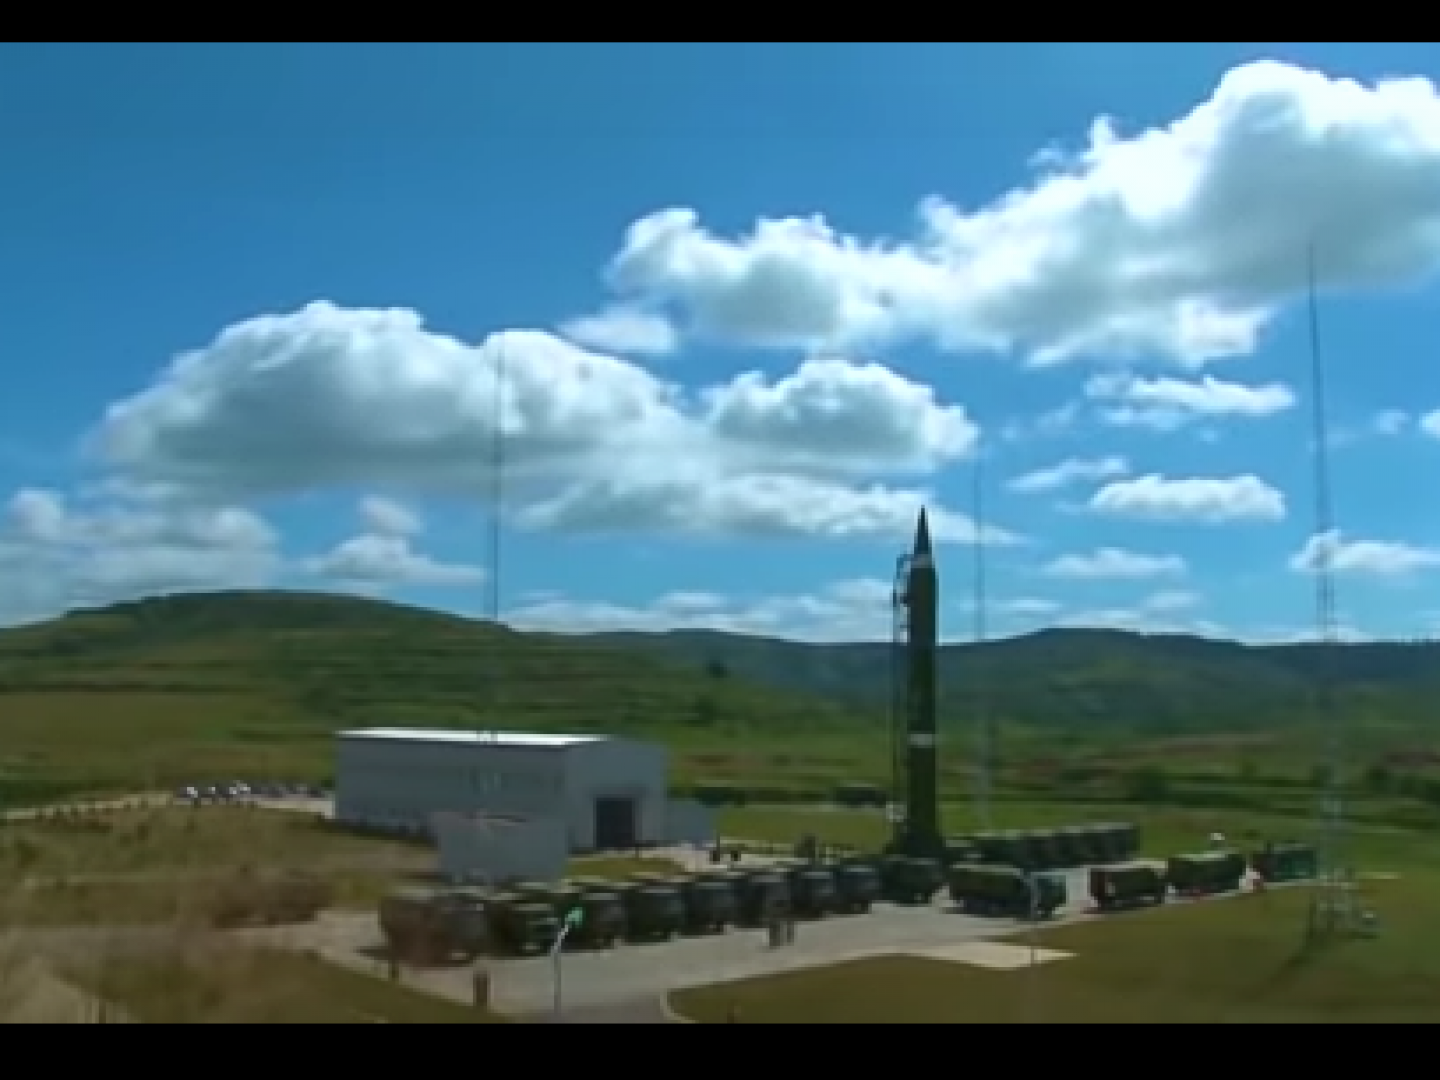 مواصفات صاروخ YJ-2 فرط الصوتي الصيني الجديد المضاد للسفن 